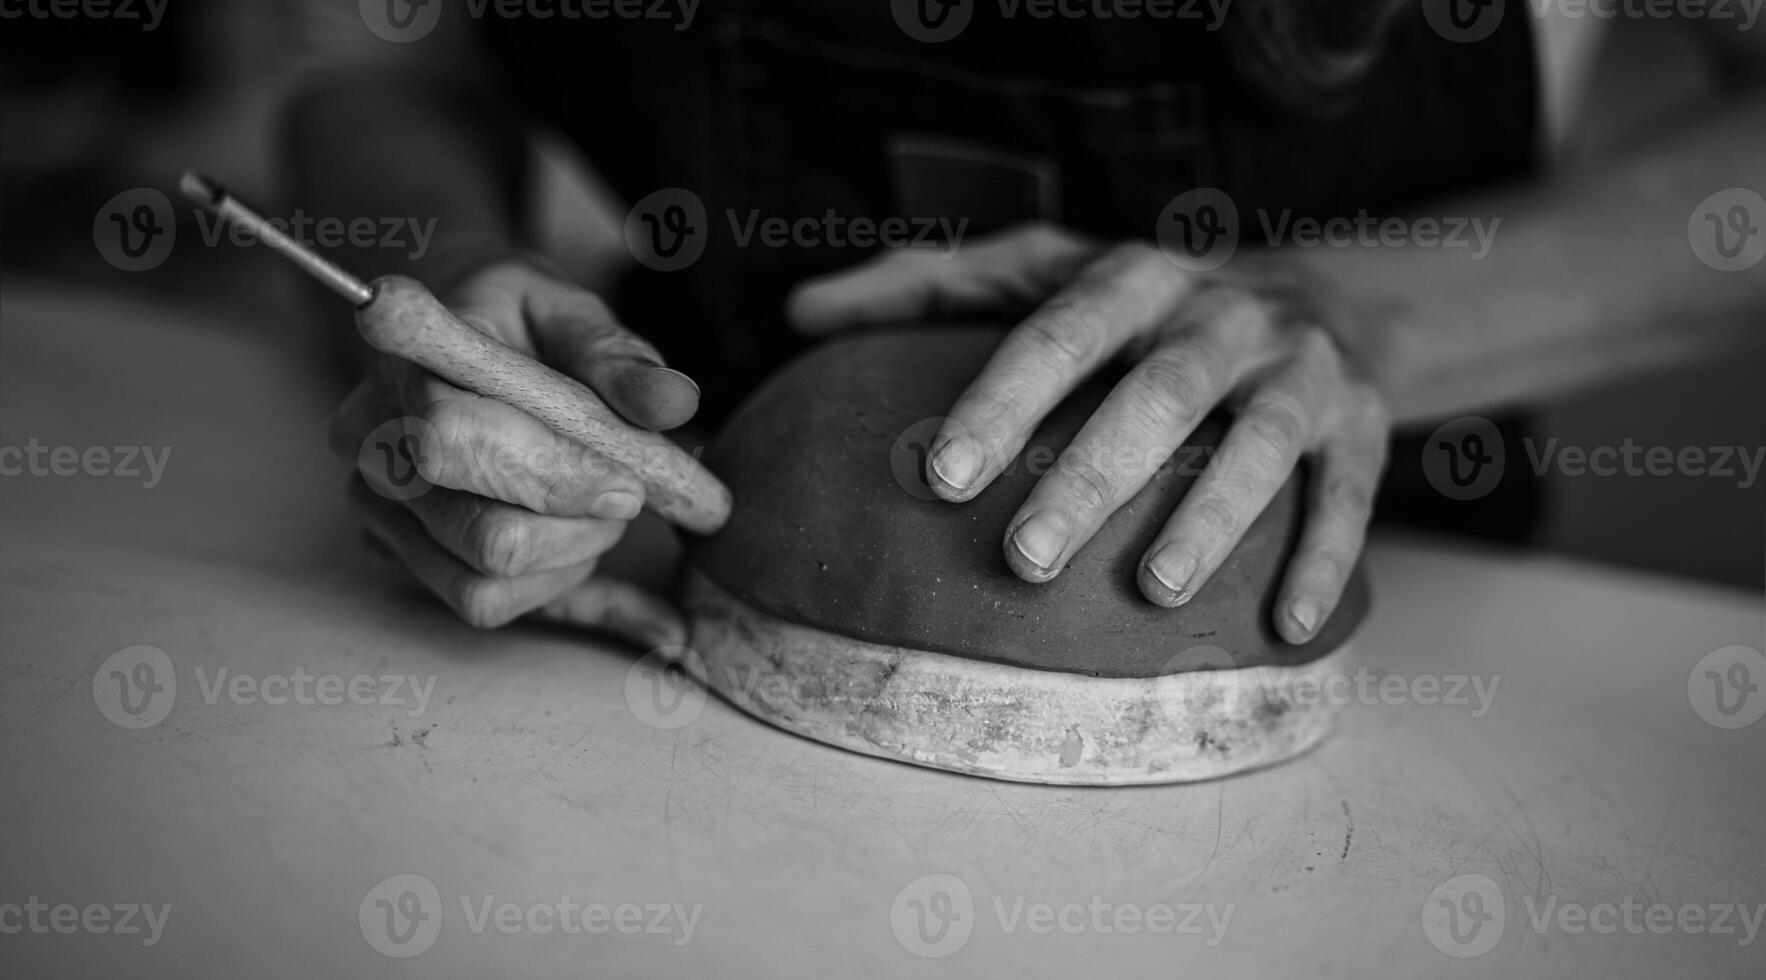 stänga upp kvinna krukmakare modellering lera skål i verkstad - hantverkare arbete och kreativ hantverk begrepp - svart och vit redigering foto